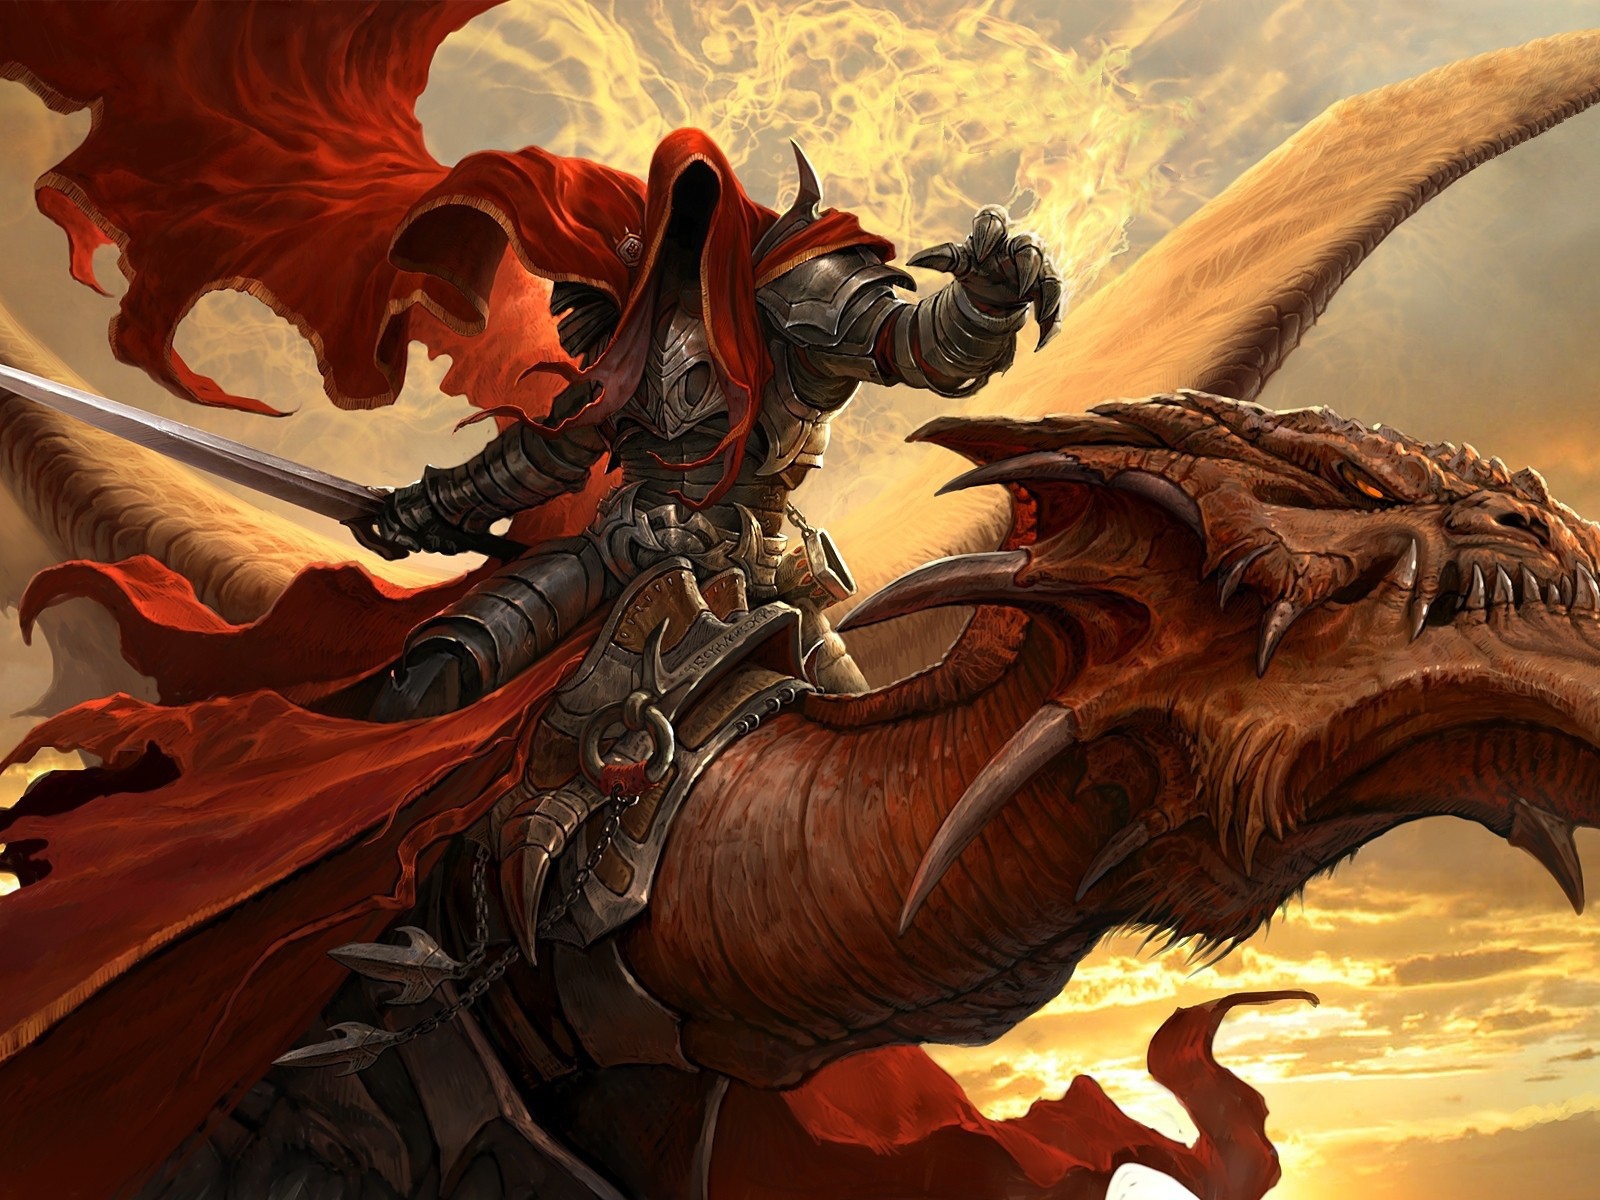 Spirit in armor riding a dragon